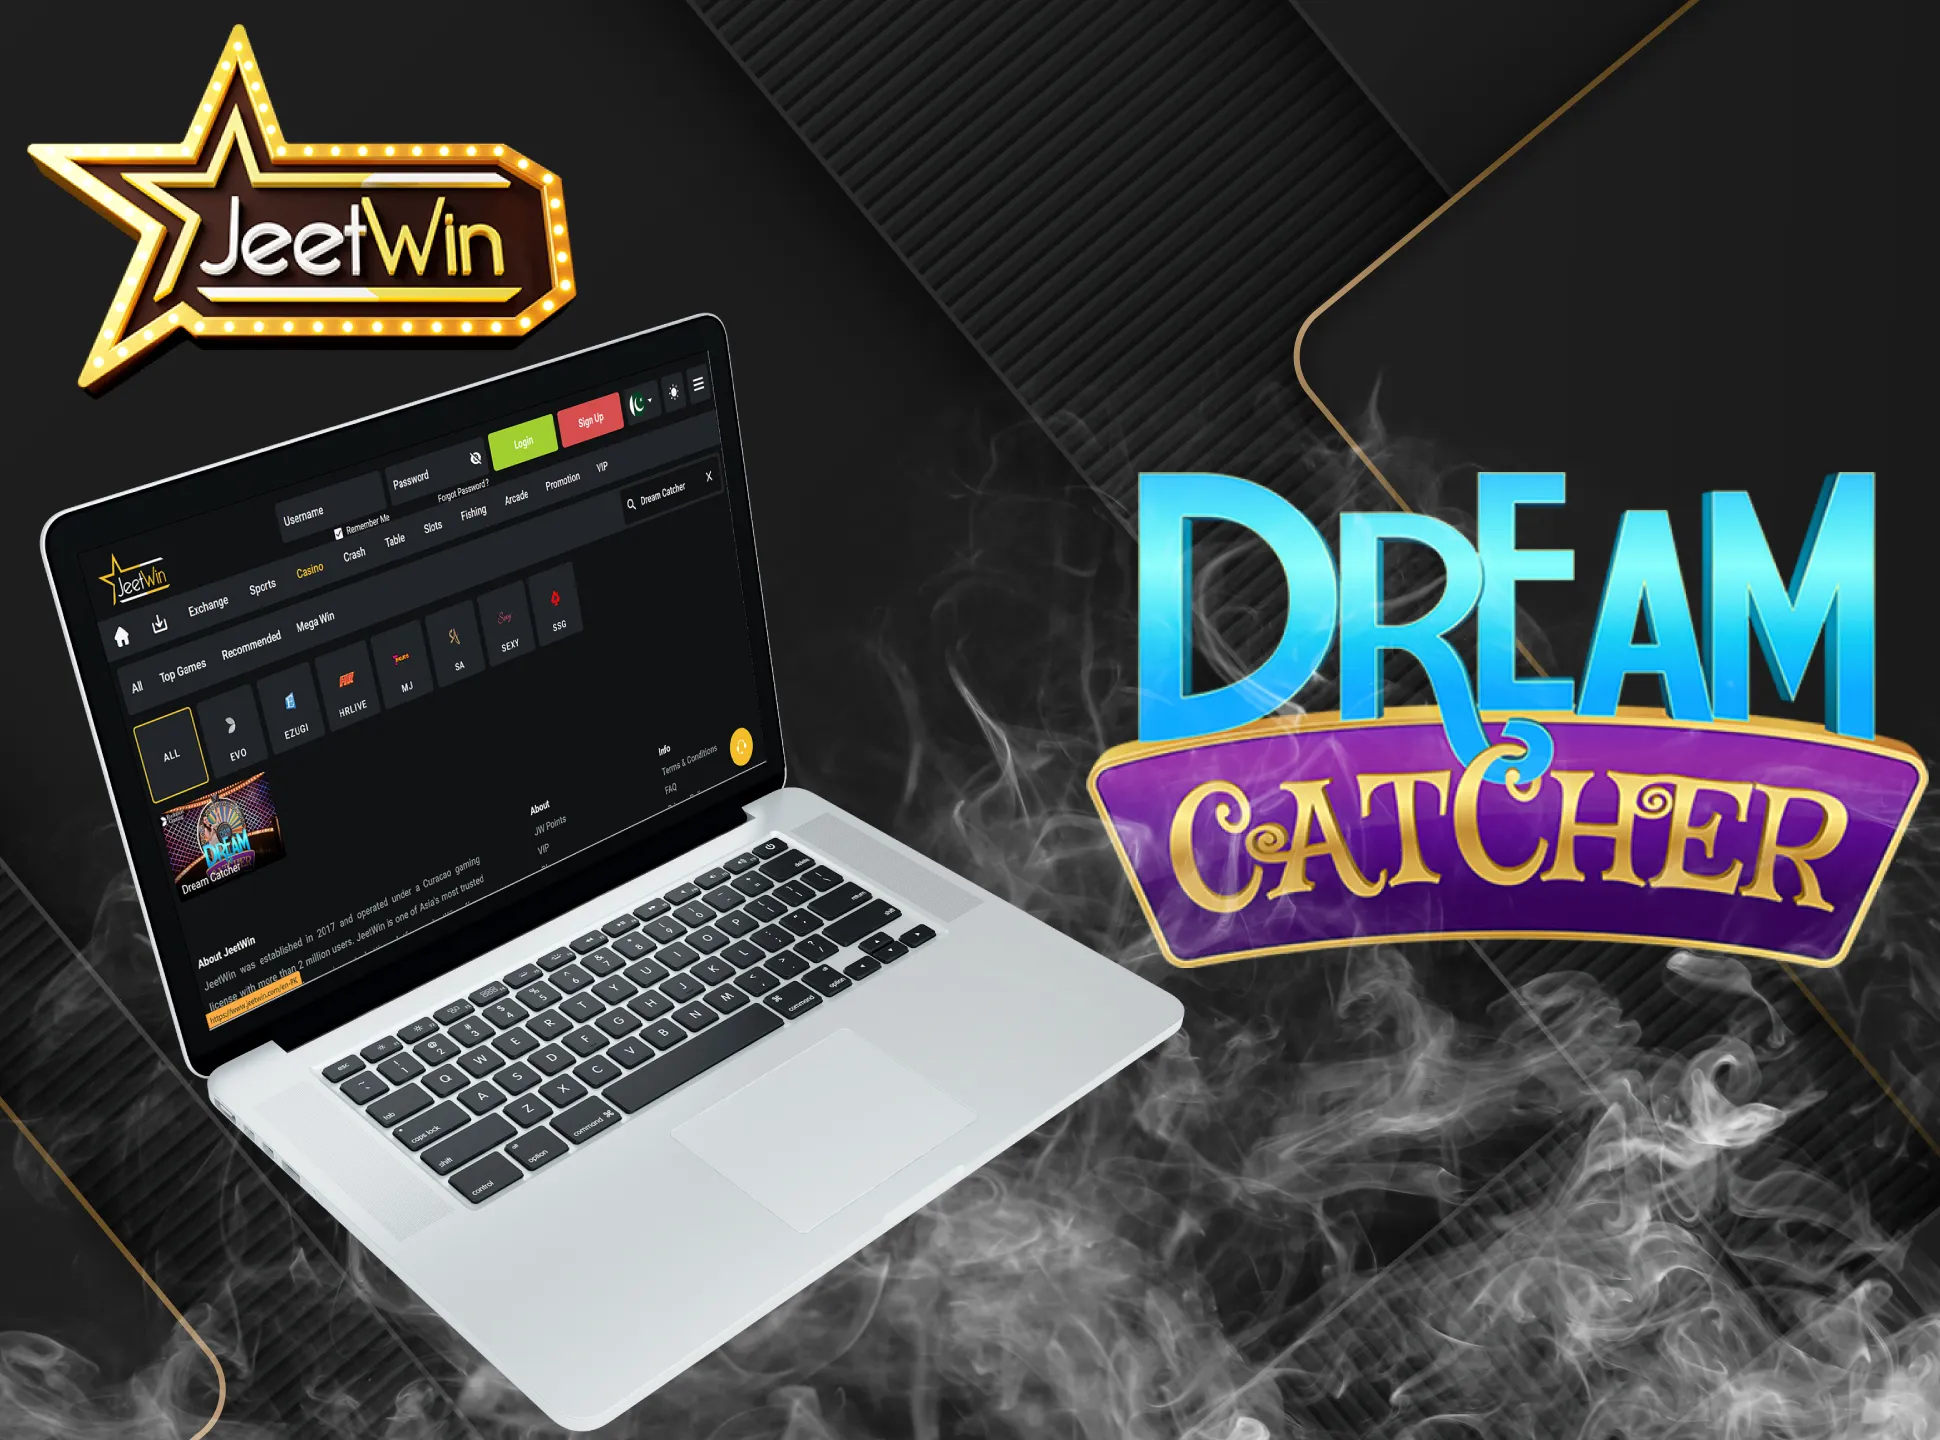 Dream Catcher کی شرائط و ضوابط پڑھیں اور JeetWin پر کھیلیں۔